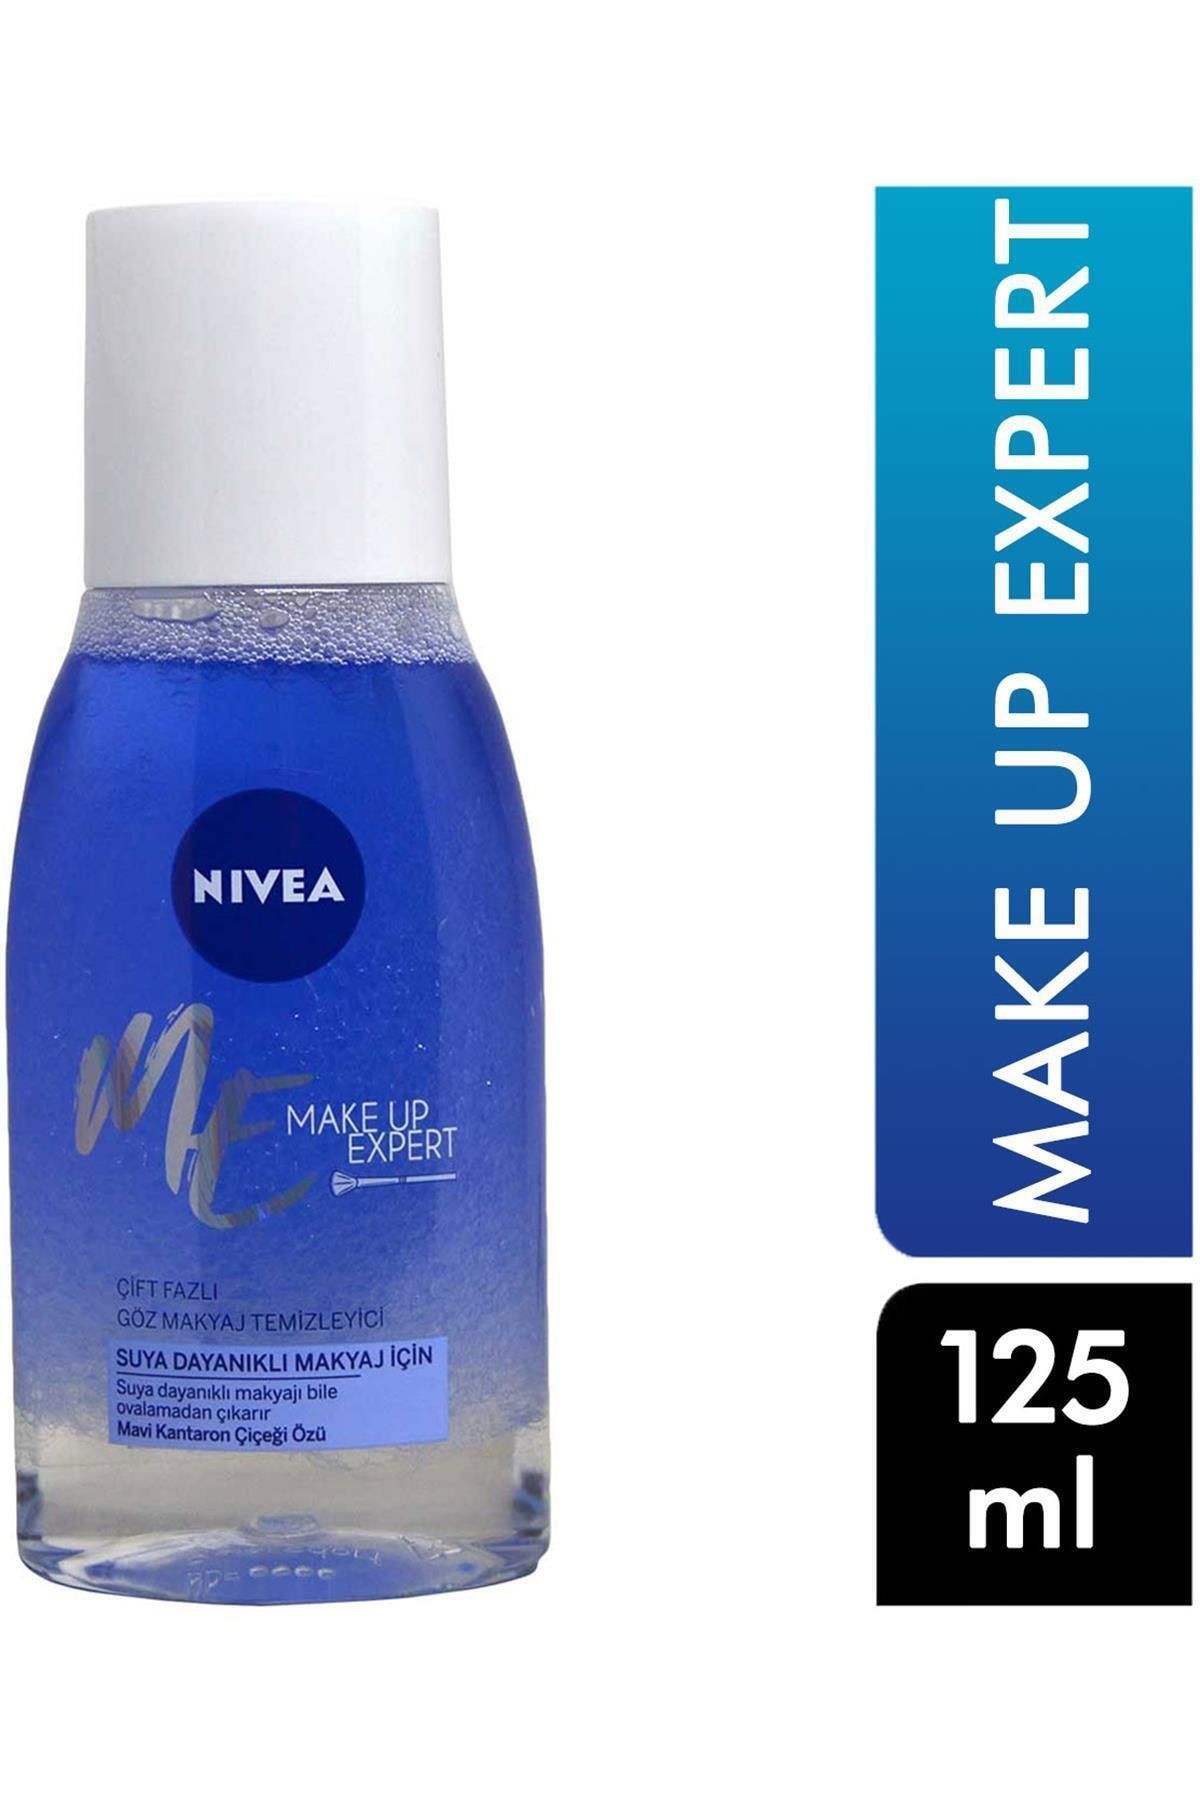 NIVEA Göz Makyaj Temizleyici 125 Ml Make Up Expert Çift Fazlı Mavi Kantaron Çiçeği Özü